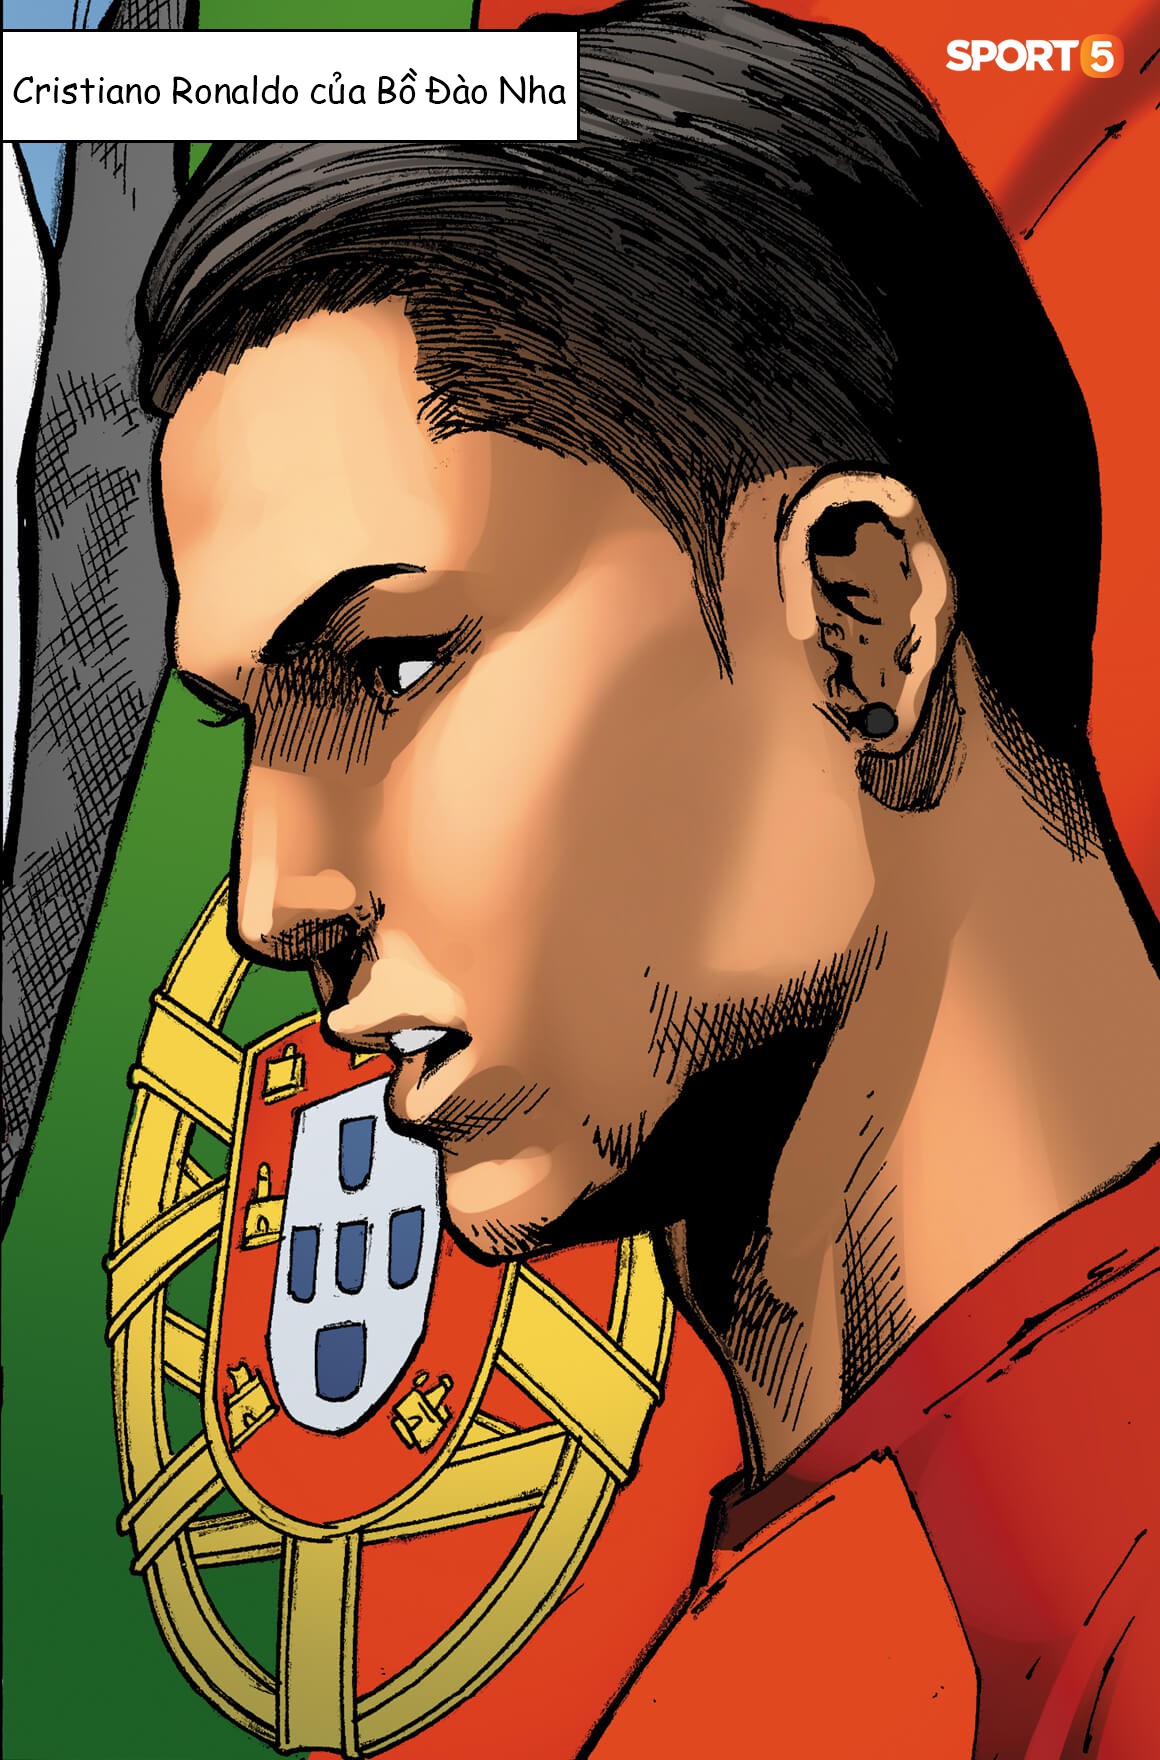 Truyện, Phong cách Marvel, Ronaldo: Được lấy cảm hứng từ huyền thoại bóng đá Cristiano Ronaldo và văn hóa Marvel, các bức tranh về CR7 sẽ khiến người xem trầm trồ khen ngợi. Với phong cách Marvel độc đáo kết hợp với những câu chuyện ly kỳ này, bạn sẽ không thể rời mắt khỏi những bức tranh này.